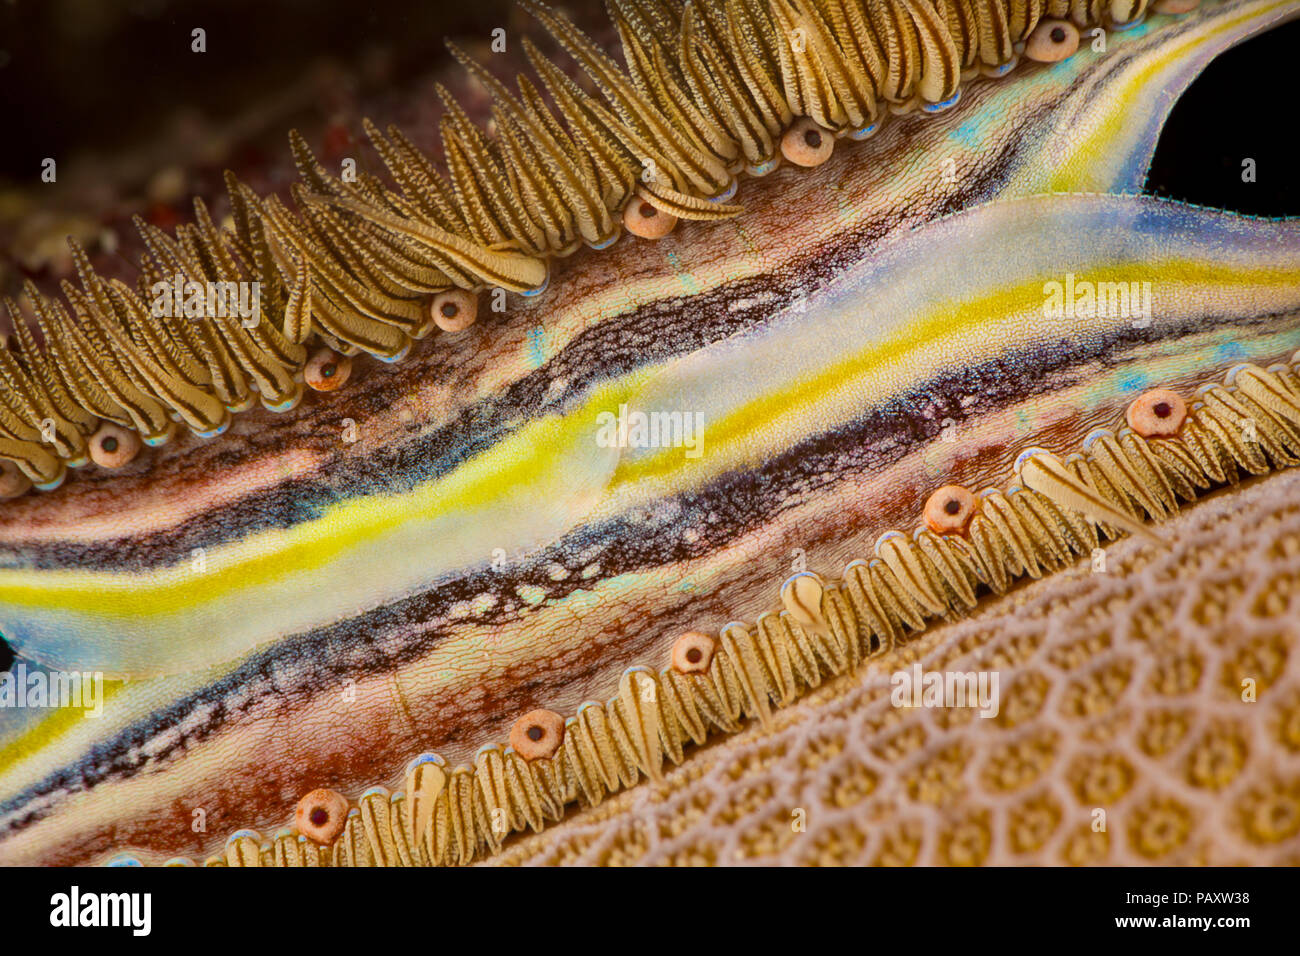 Le manteau de couleur vive et des rangées de petits yeux faire le corail-plate de pétoncle, de Pédum spondyloideum, facilement reconnue sur le récif, Yap, Micronésie. Banque D'Images